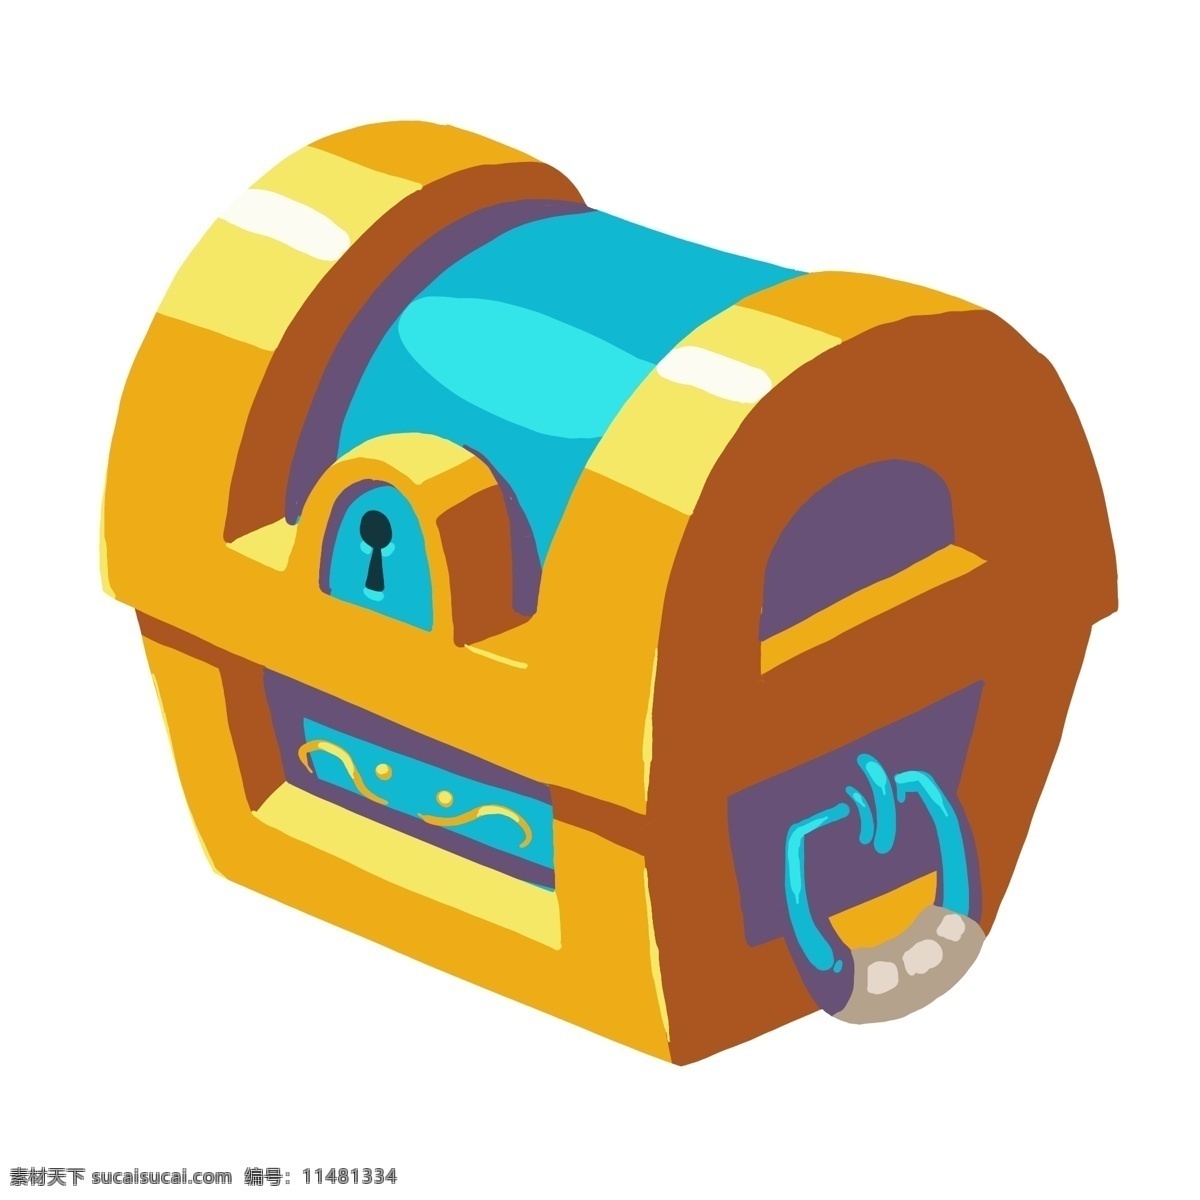 蓝 黄色 宝 箱 图案 插图 大气的宝箱 简约的宝箱 创意 设计宝箱 诱人的宝箱 金融宝箱 时尚宝箱